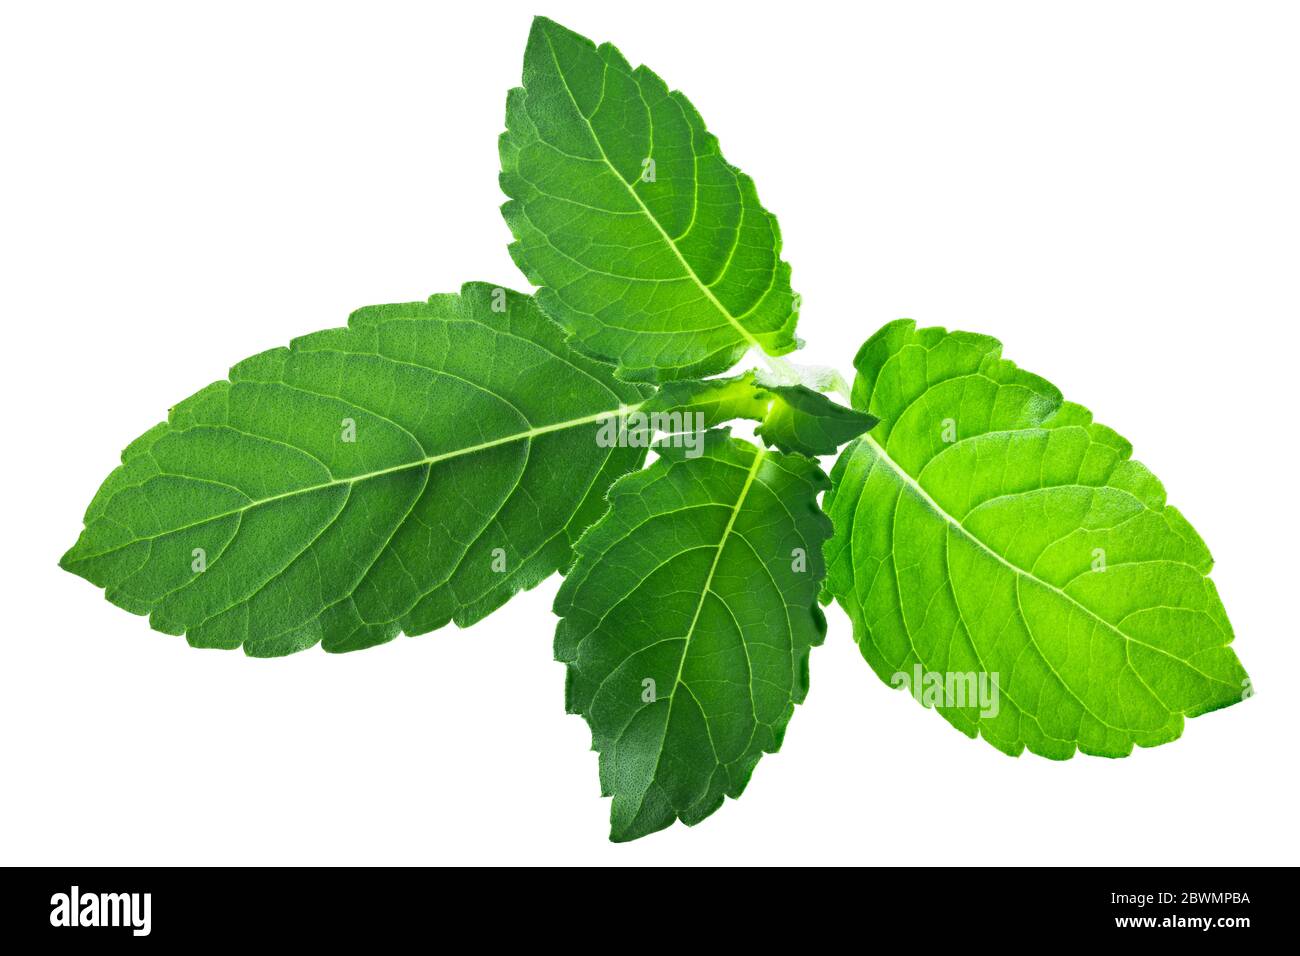 Rama tulsi leaves (Ocimum tenuiflorum foliage) isolated Stock Photo - Alamy